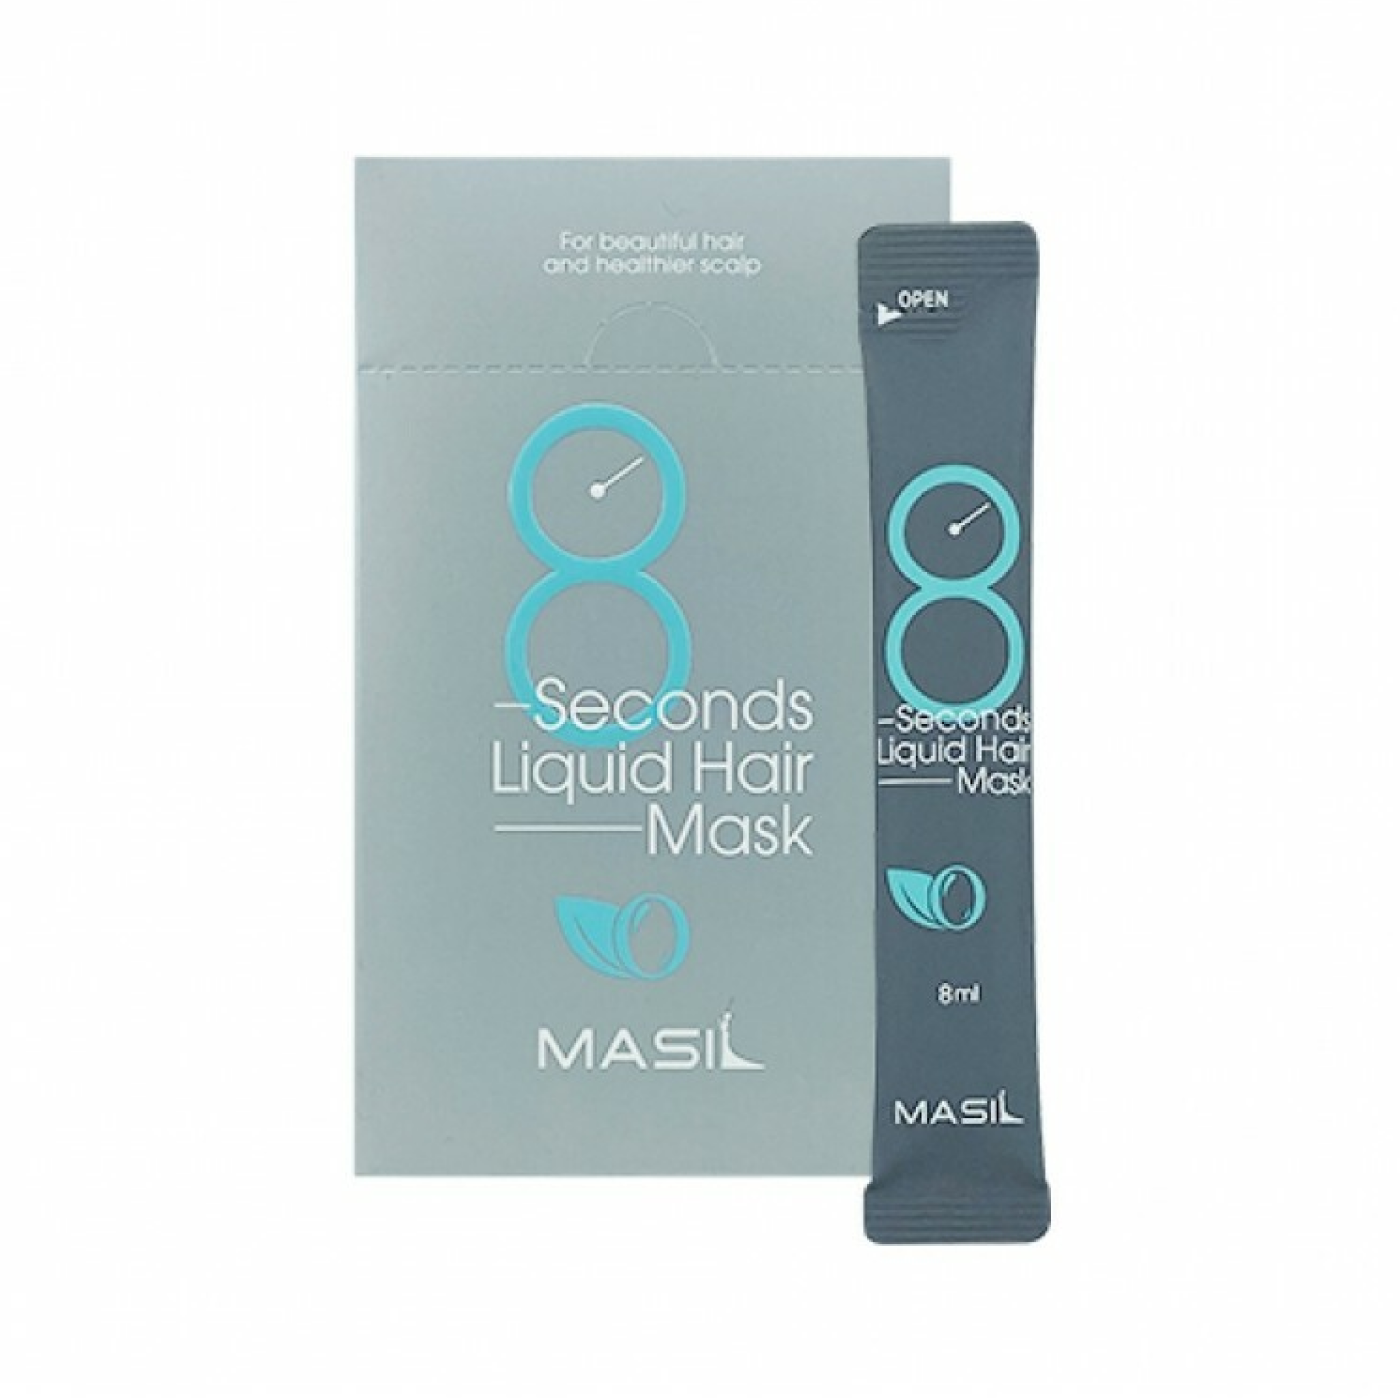 Маска для волос масил. Masil 8 seconds Salon Liquid hair Mask (8ml*20ea). Маска для волос masil 8seconds Liquid hair Mask Stick Pouch. Masil маска-экспресс для объема волос - 8 seconds Liquid hair Mask, 8мл*20шт. Маска для волос masil 8.